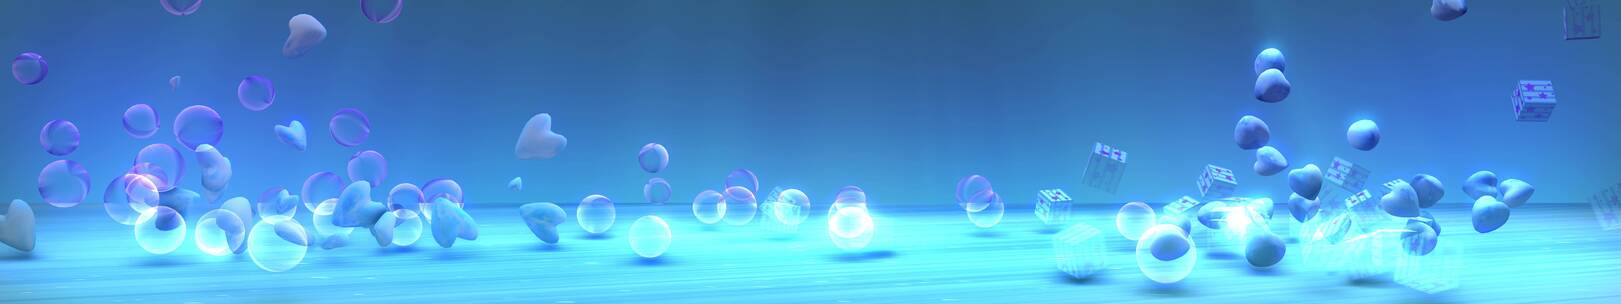 蓝色泡泡 3d泡泡球